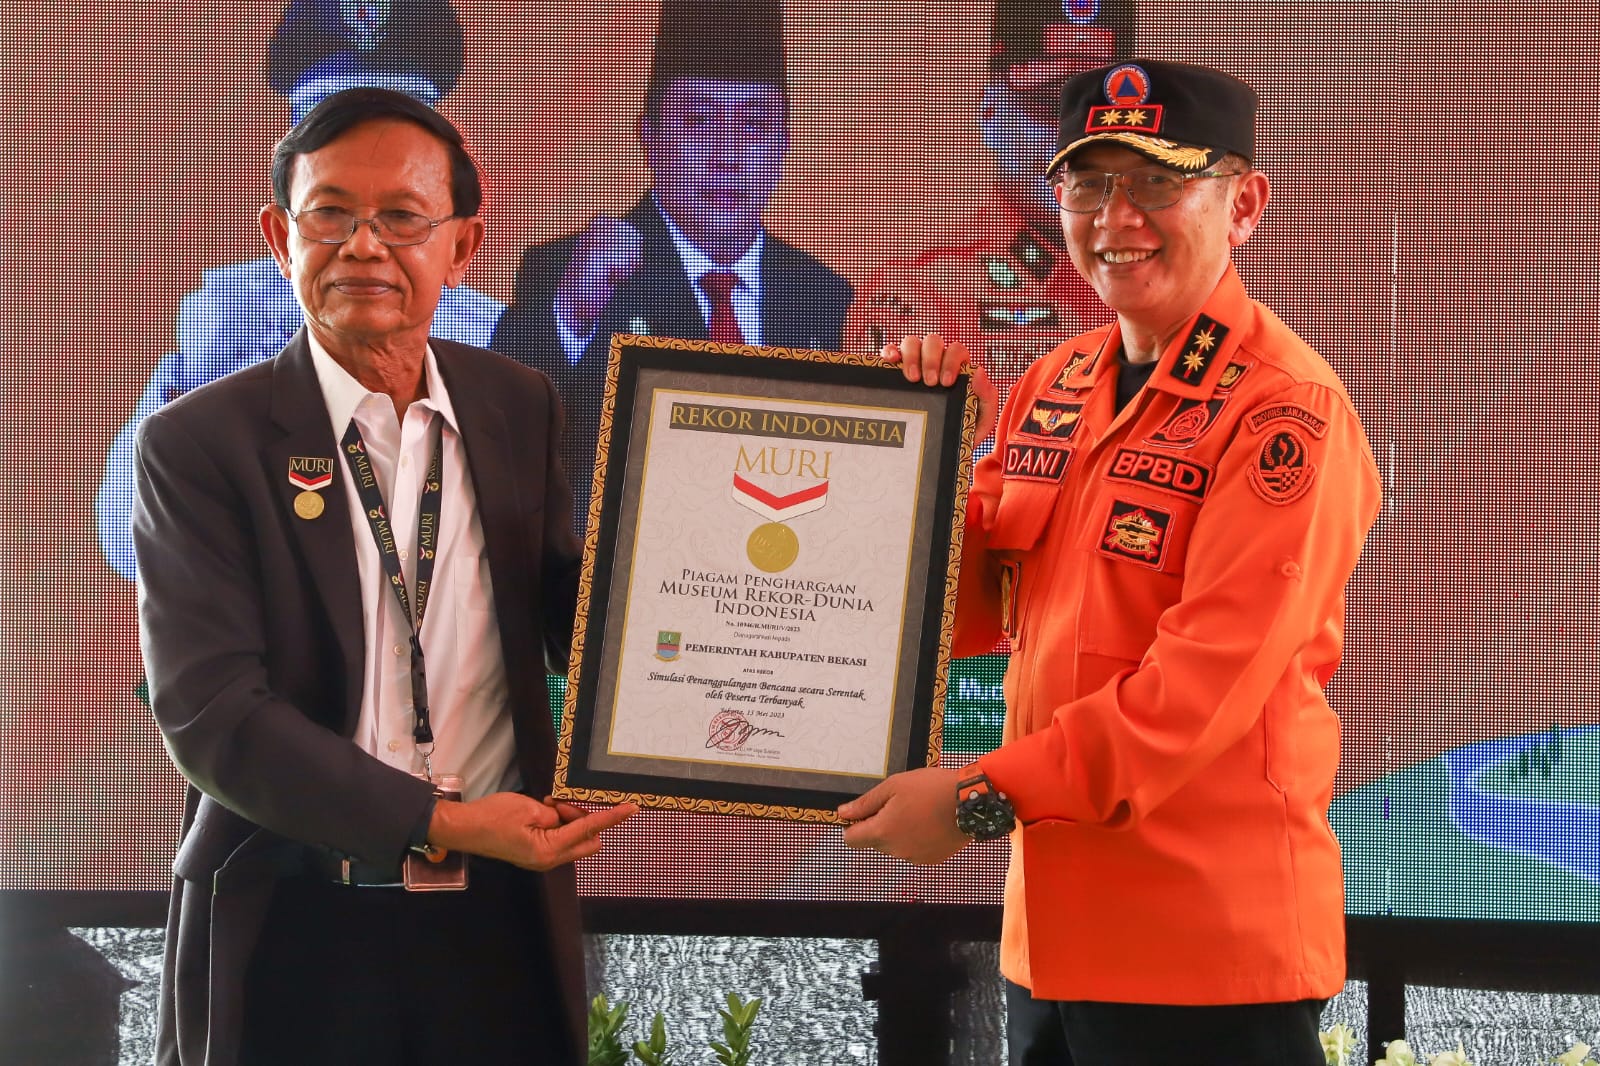 Pemerintah Kabupaten Bekasi berhasil memecahkan Rekor MURI dalam simulasi penanggulangan bencana yang diikuti sebanyak 23.000 peserta/Rubrik Bekasi